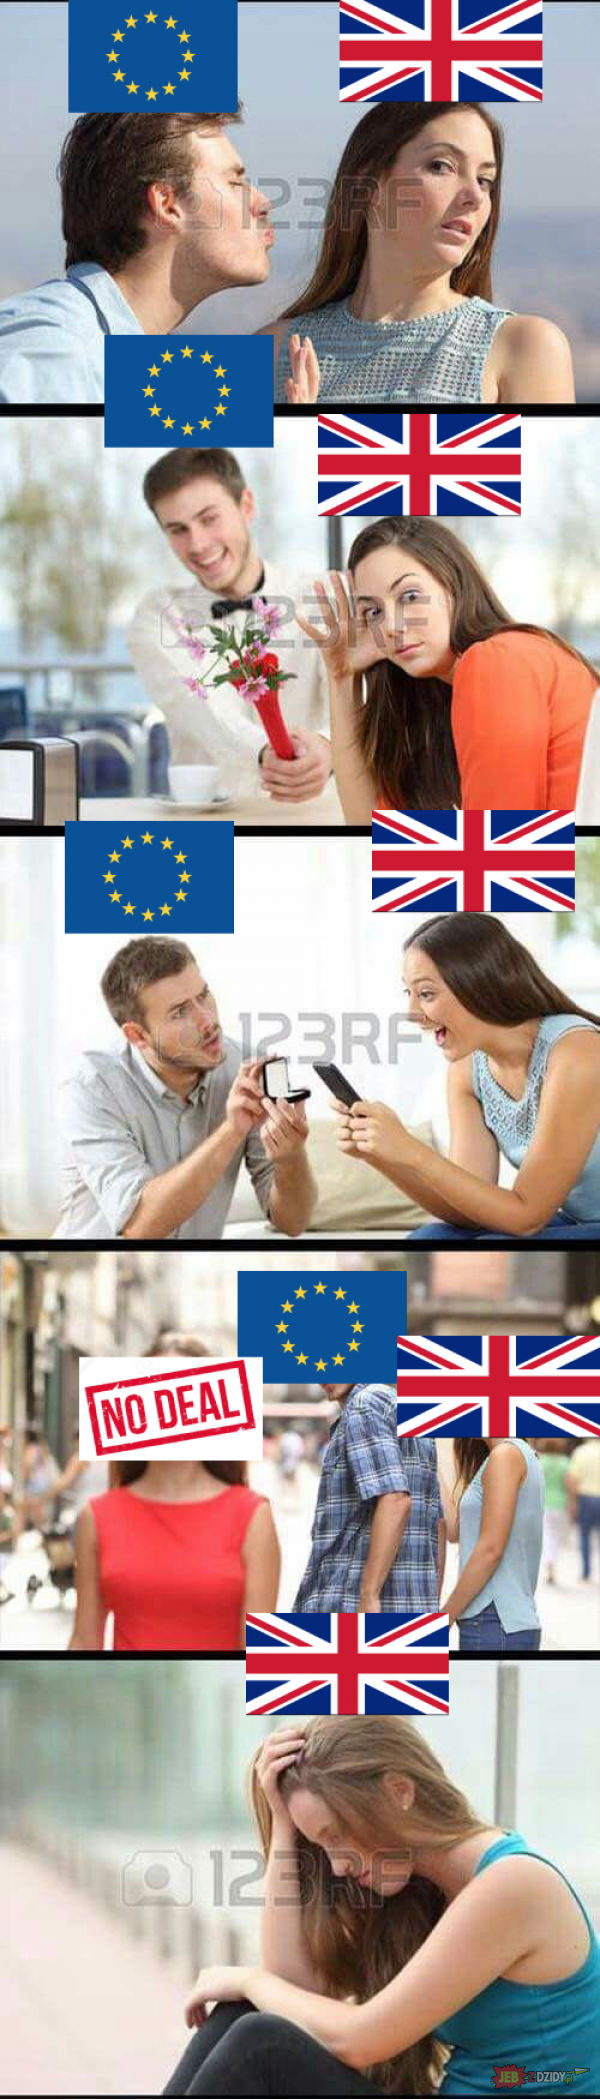 Unia Europejska 